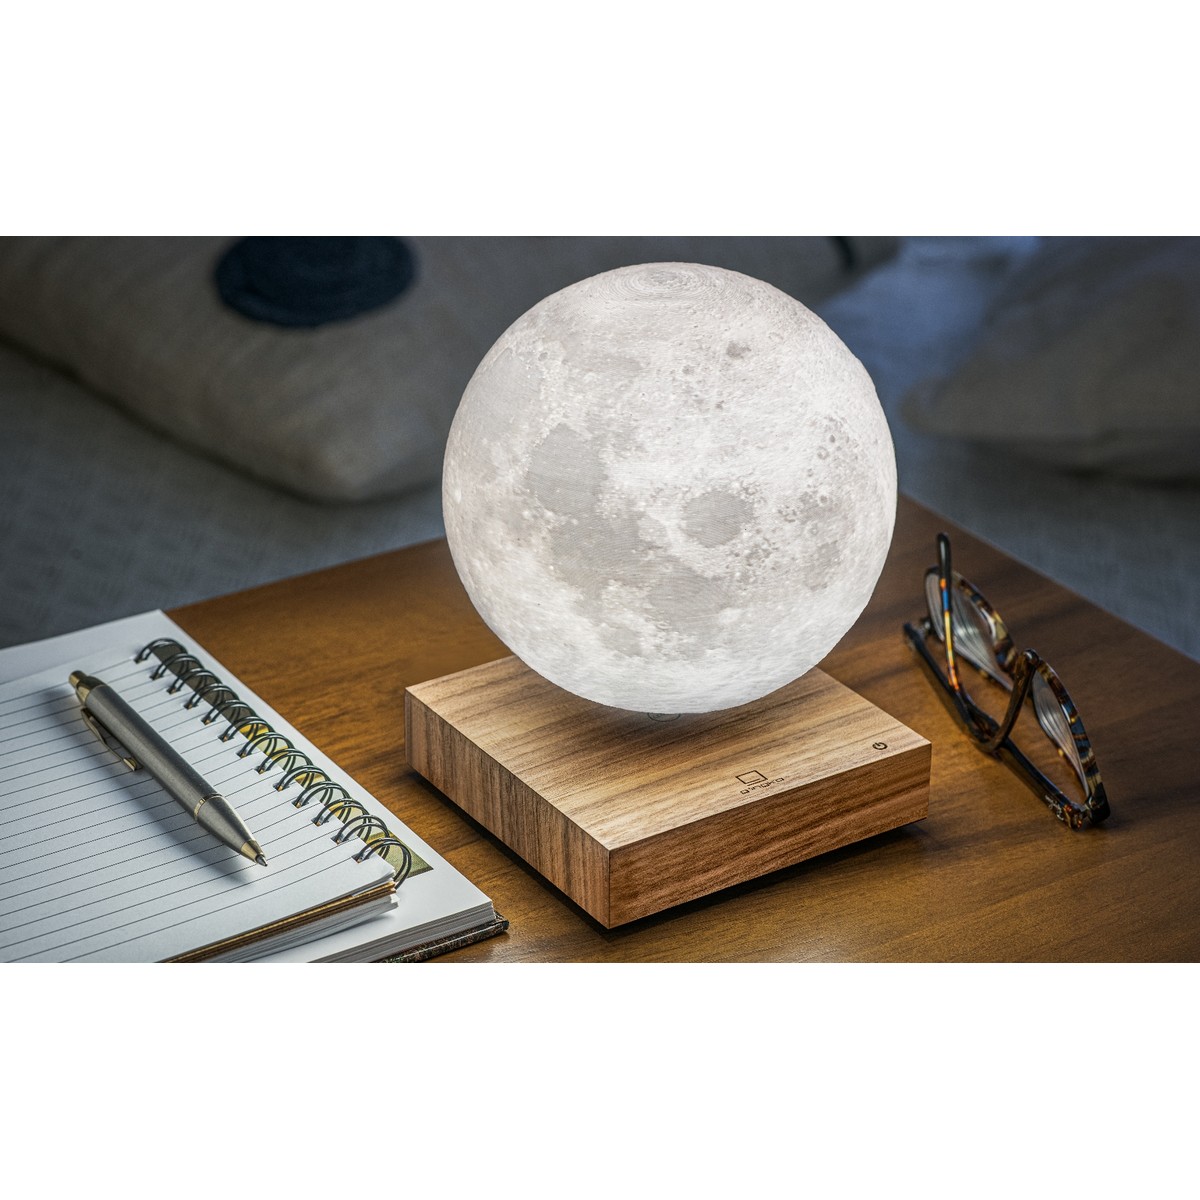   Lune Lampe en Lévitation  12x12x3cm (diam14cm)